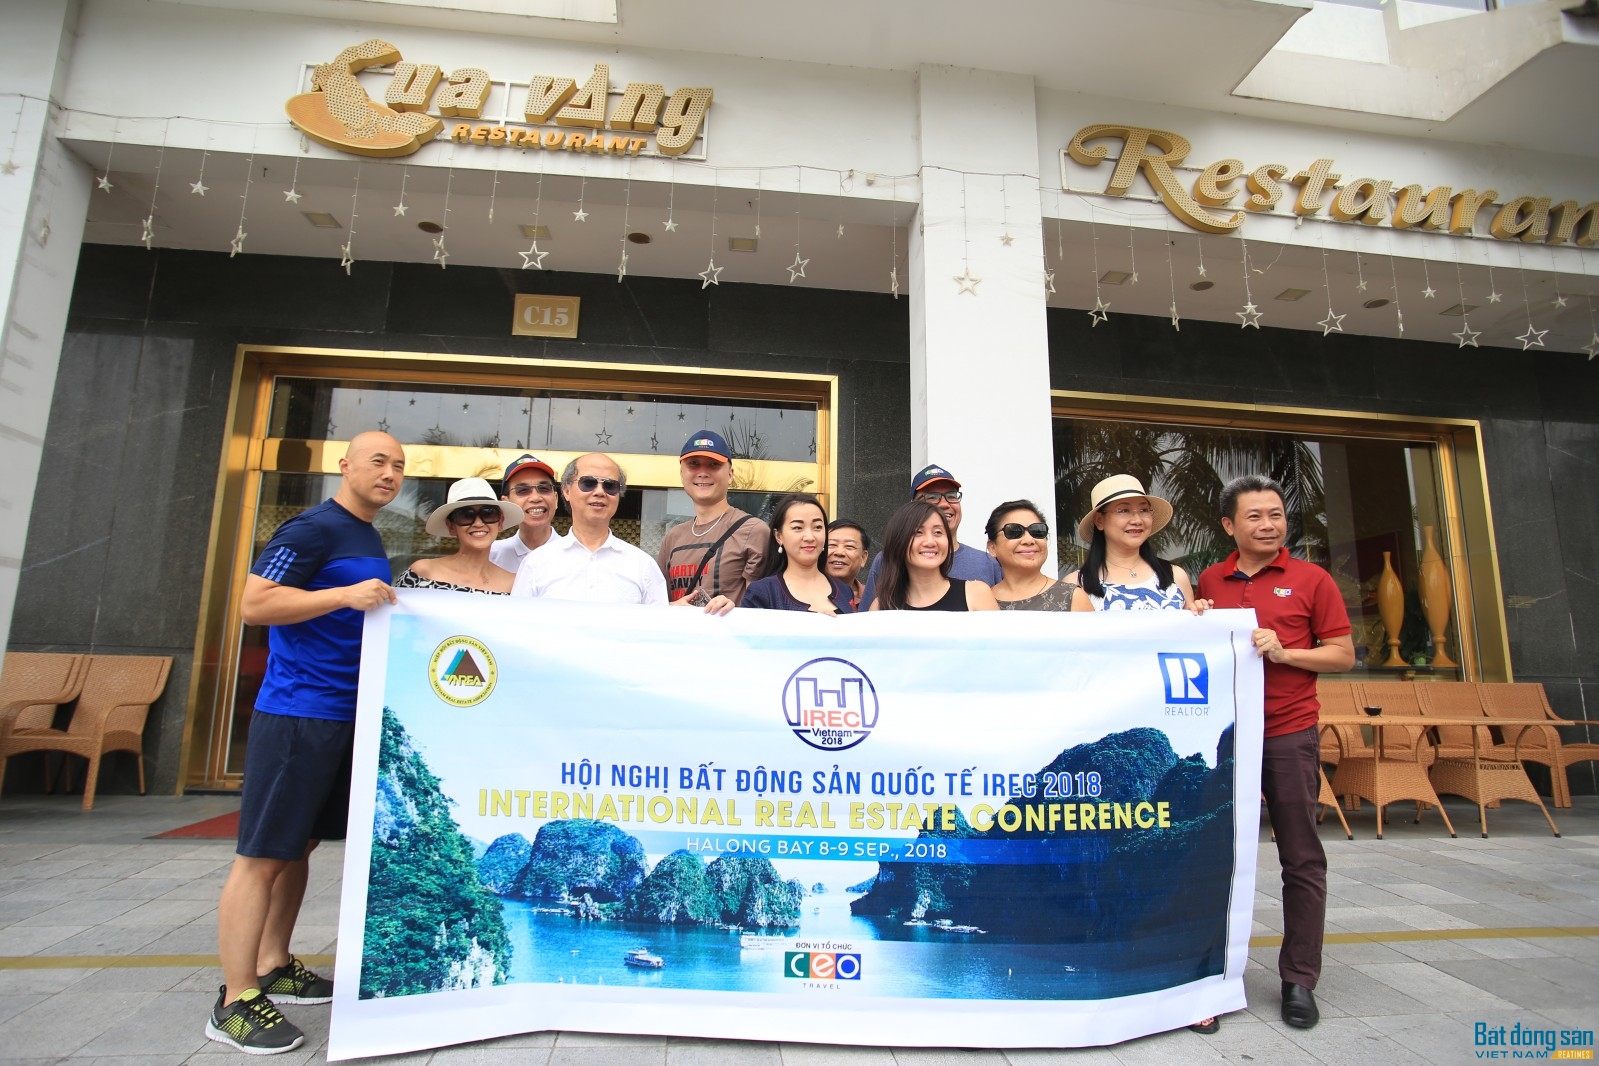 Chủ tịch Nguyễn Trần Nam vui vẻ cùng đoàn khách quốc tế chụp ảnh lưu niệm